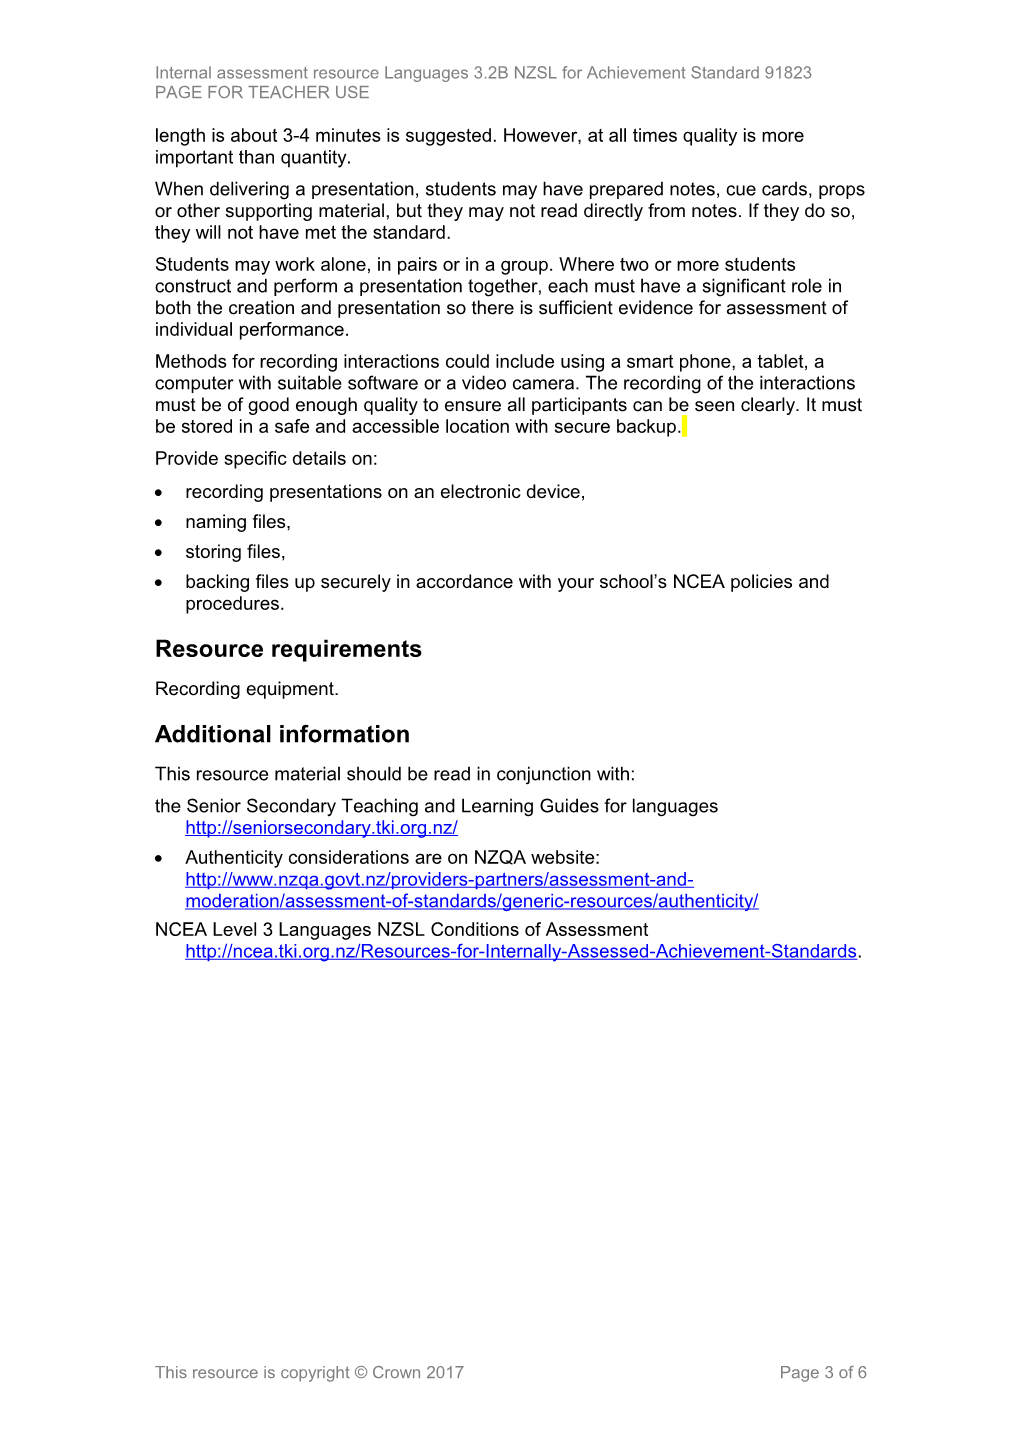 Level 3 NZSL Internal Assessment Resource